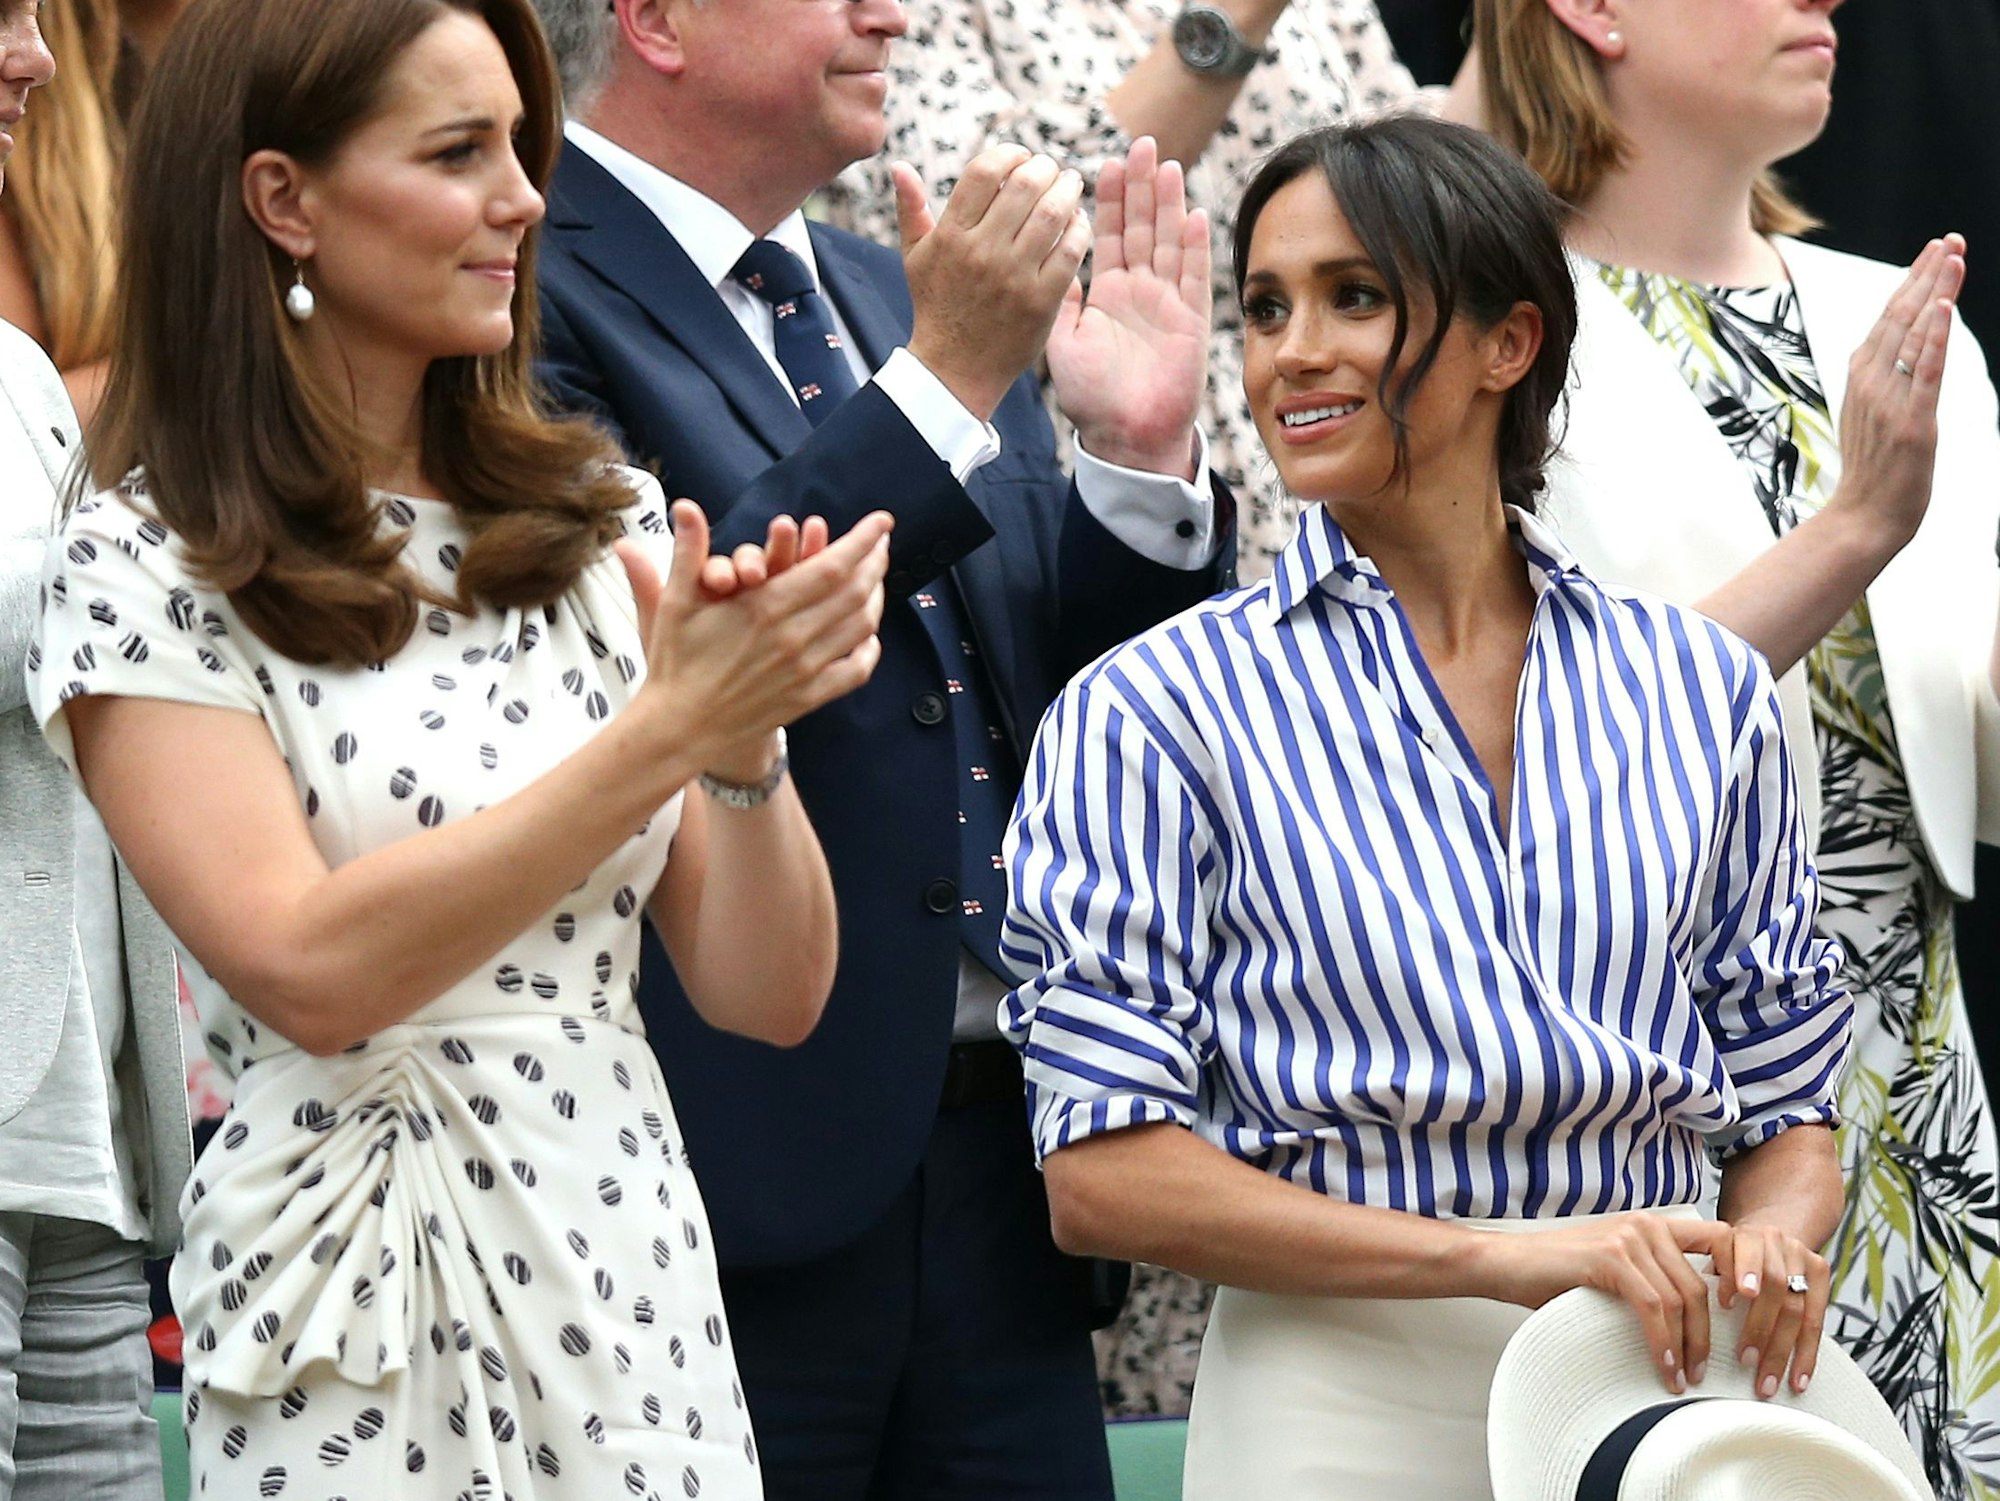 14.07.2018, Großbritannien, London: Die britischen Herzoginnen Catherine (l) und Meghan applaudieren nach dem spiel zwischen Nadal und Djokovic beim Tennisturnier Wimbledon in der Königlichen Loge.